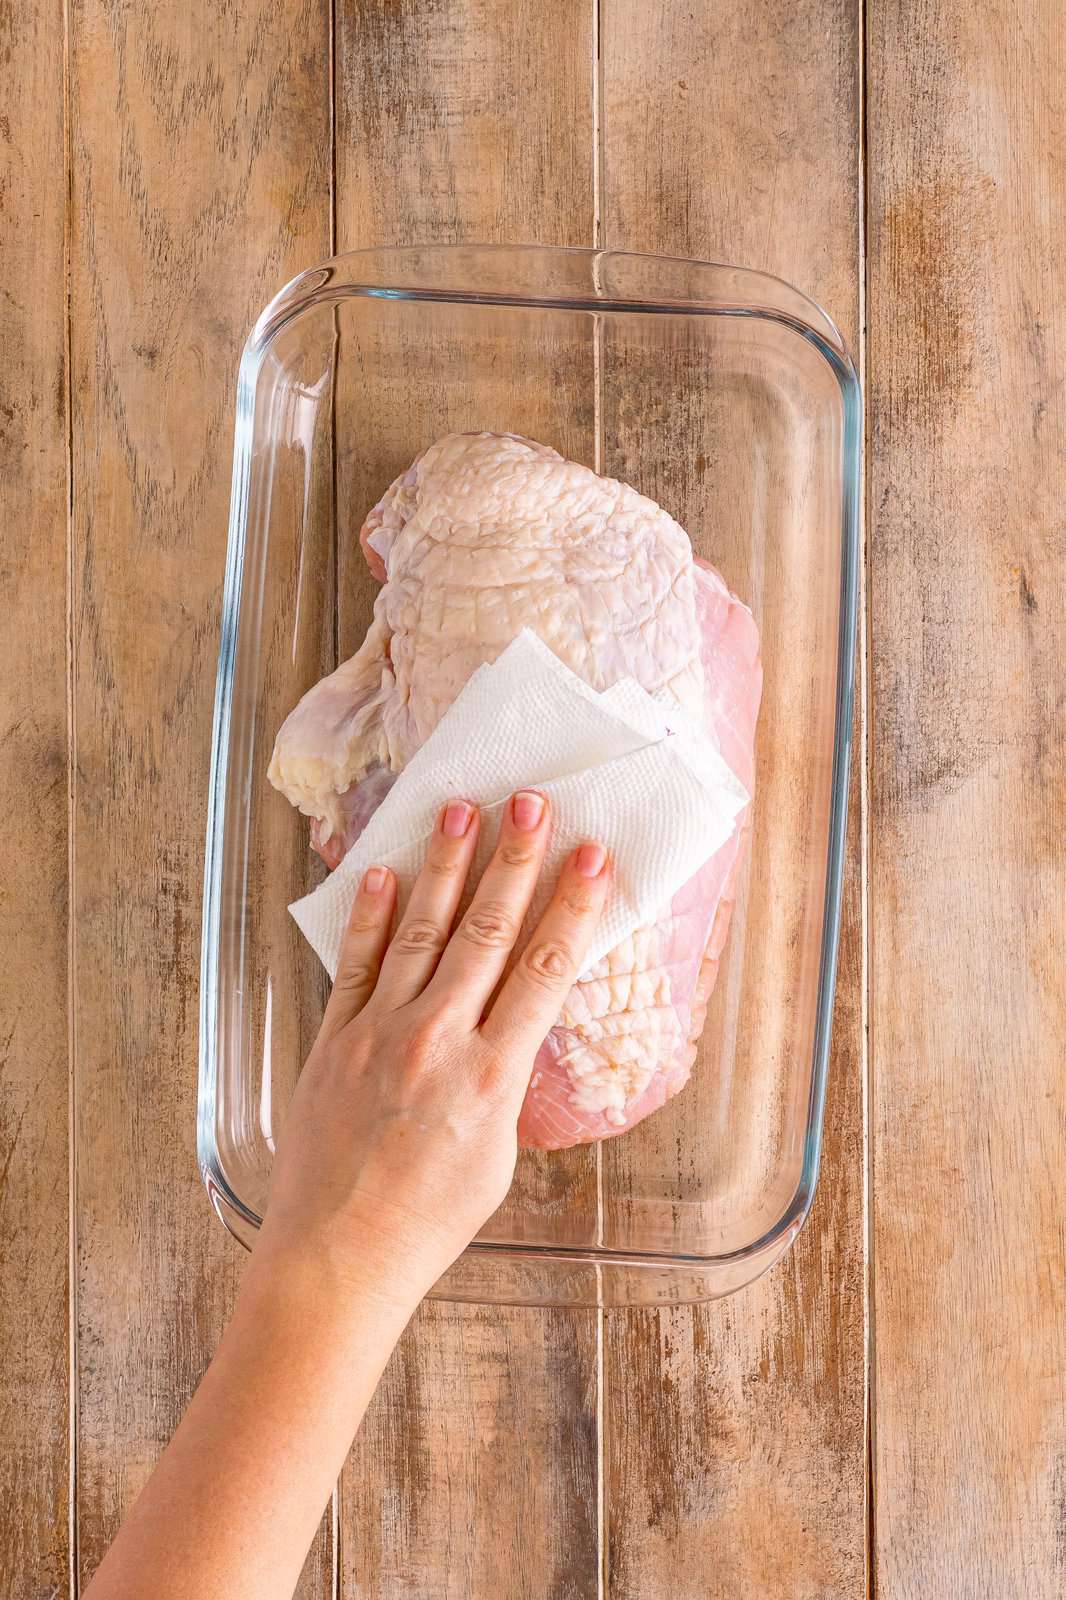 Paper towel patting turkey breast dry.